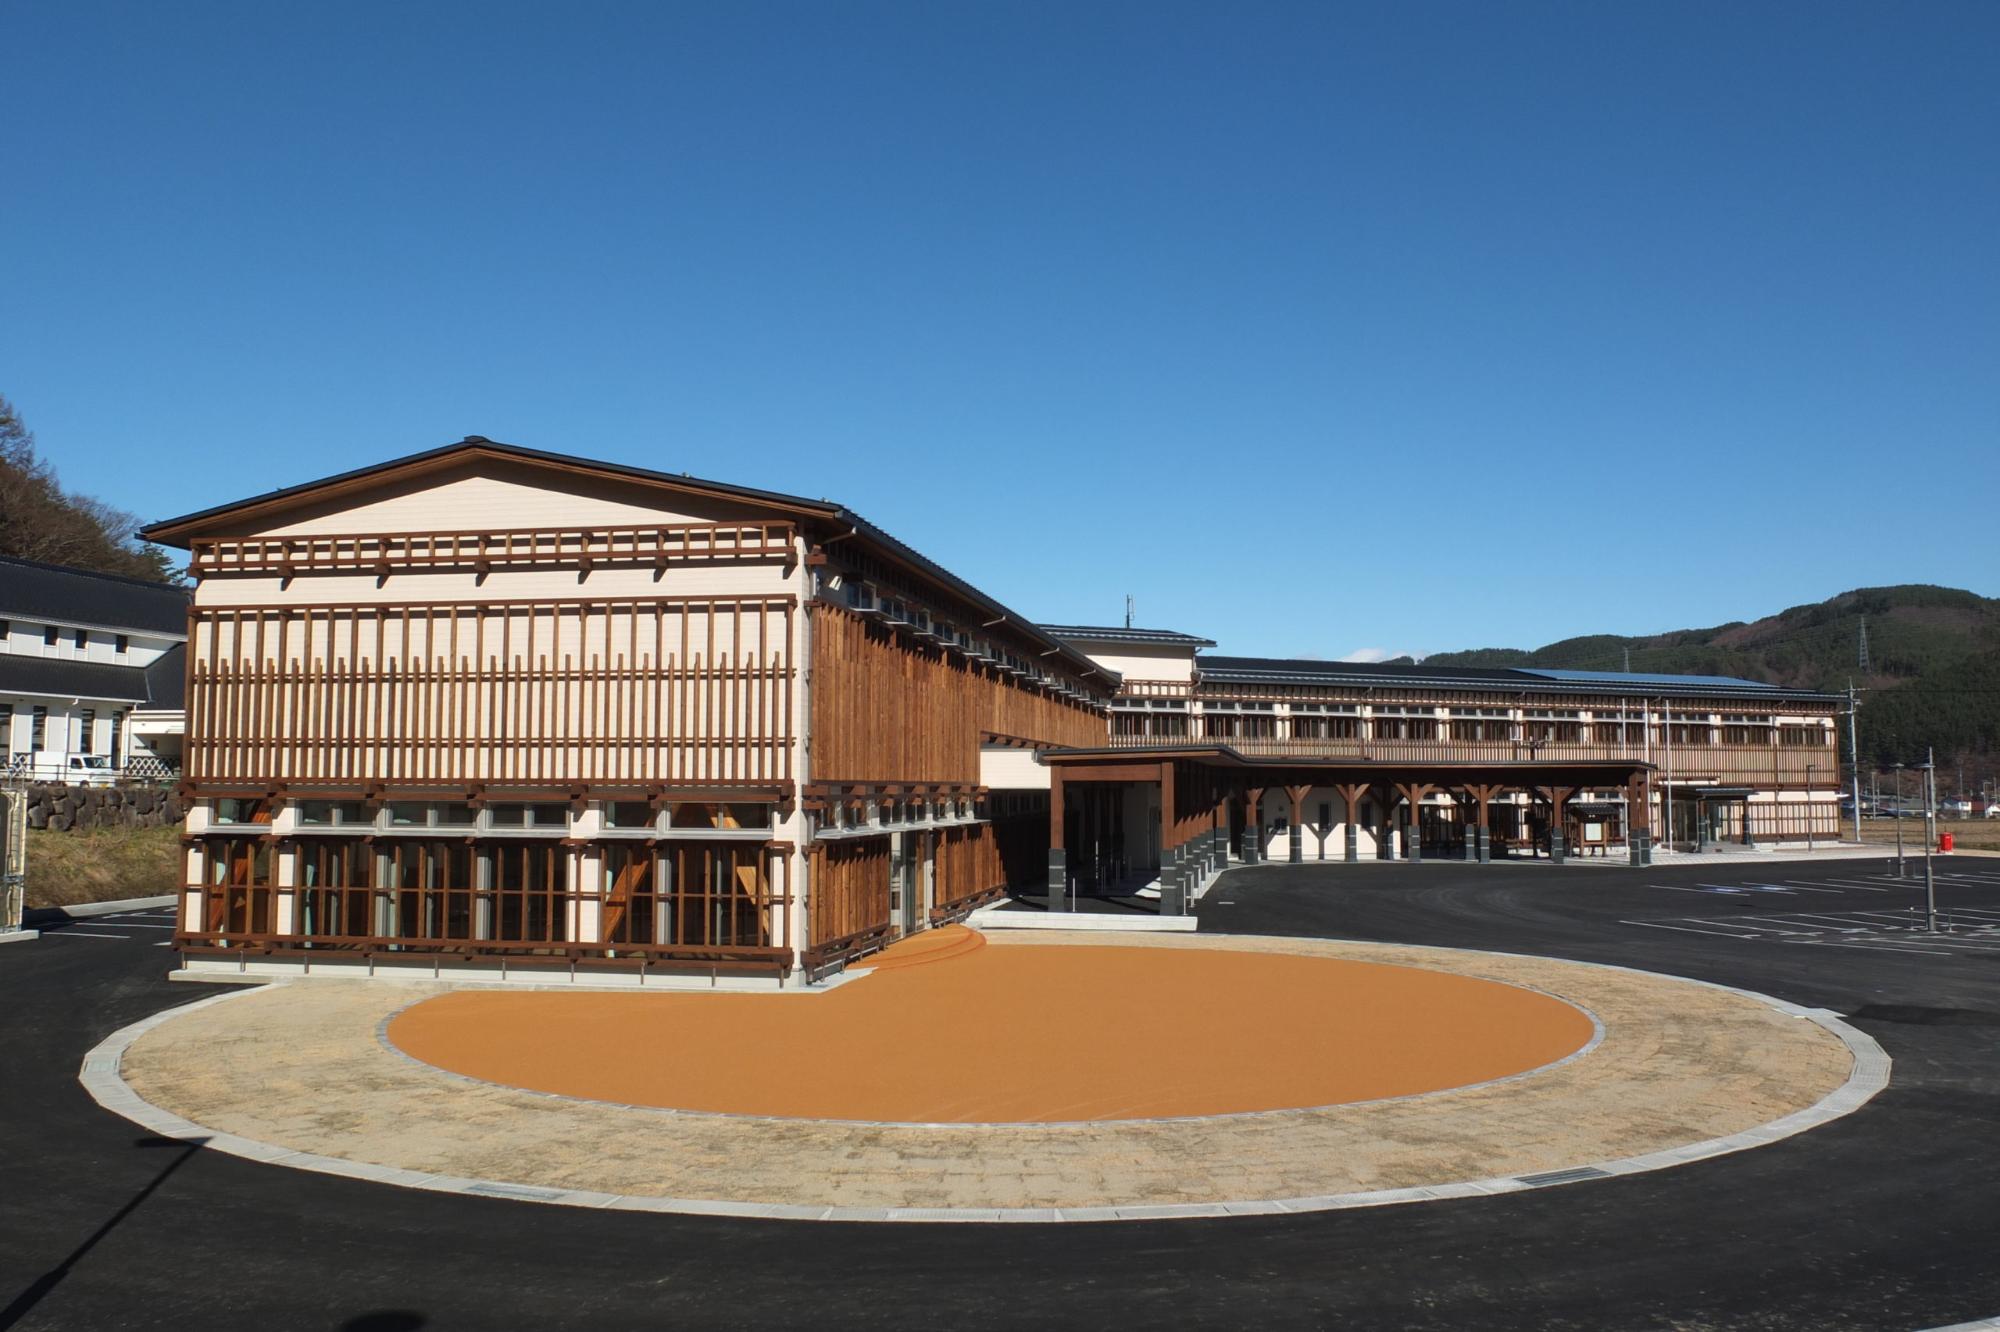 長和町産の唐松材地元の木材を使った「くの字」型配置の3階建ての建物で、宿場町の面影を感じさせる長和町役場庁舎の外観写真